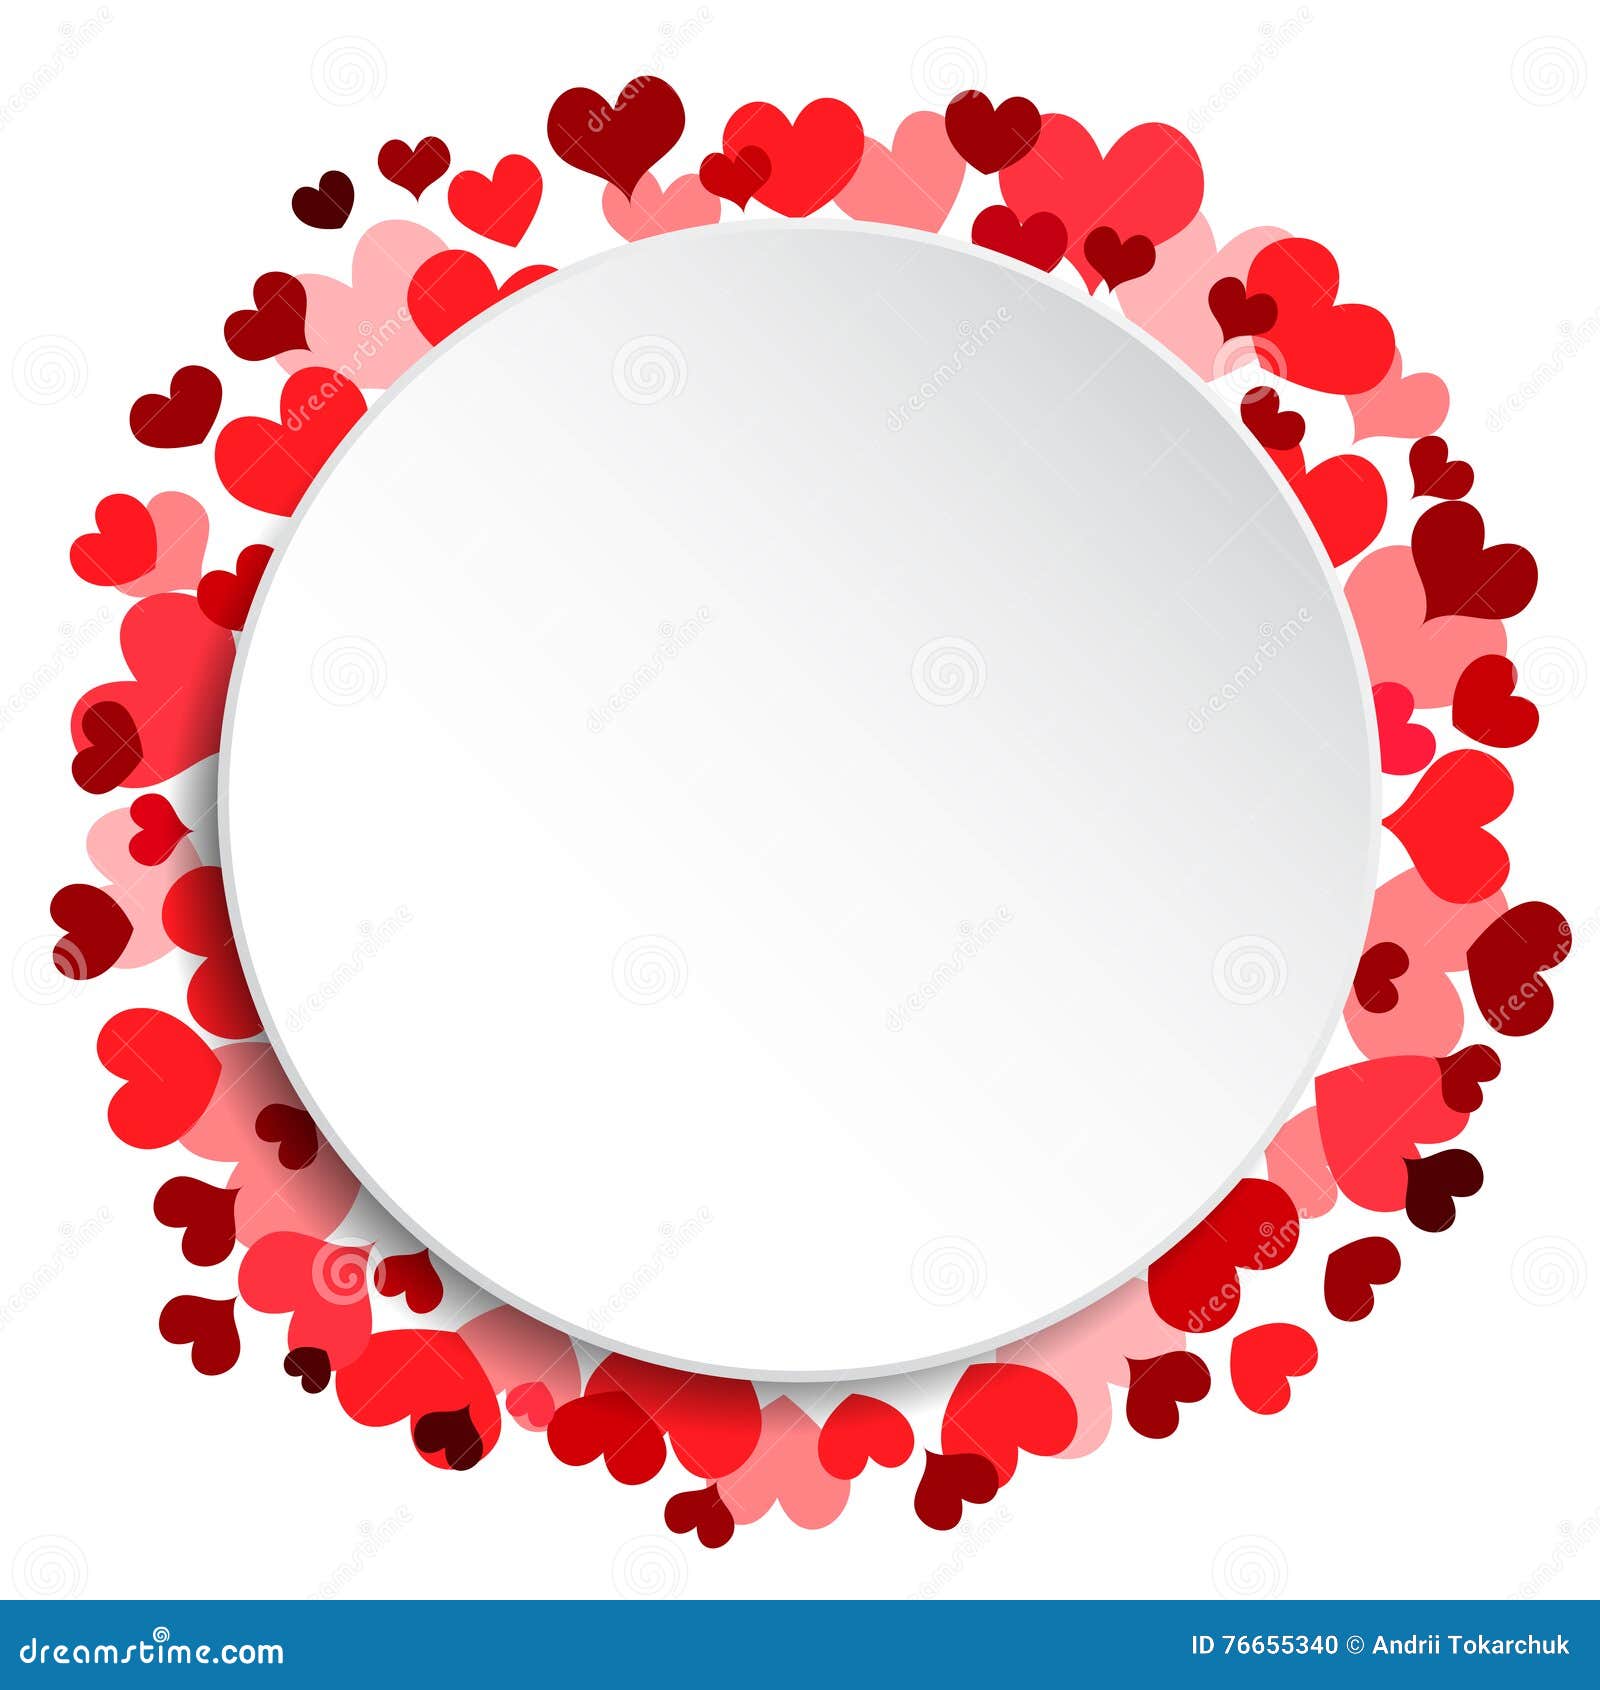 Khung vòng tròn trắng, Valentine, Tôi Yêu Bạn sẽ là một quà tặng tuyệt vời cho người bạn yêu thương của bạn. Sự kết hợp của màu trắng và chữ “Tôi Yêu Bạn” trong khung vòng tròn trắng sẽ giúp bạn thể hiện tình cảm và sự quan tâm tới người đó.